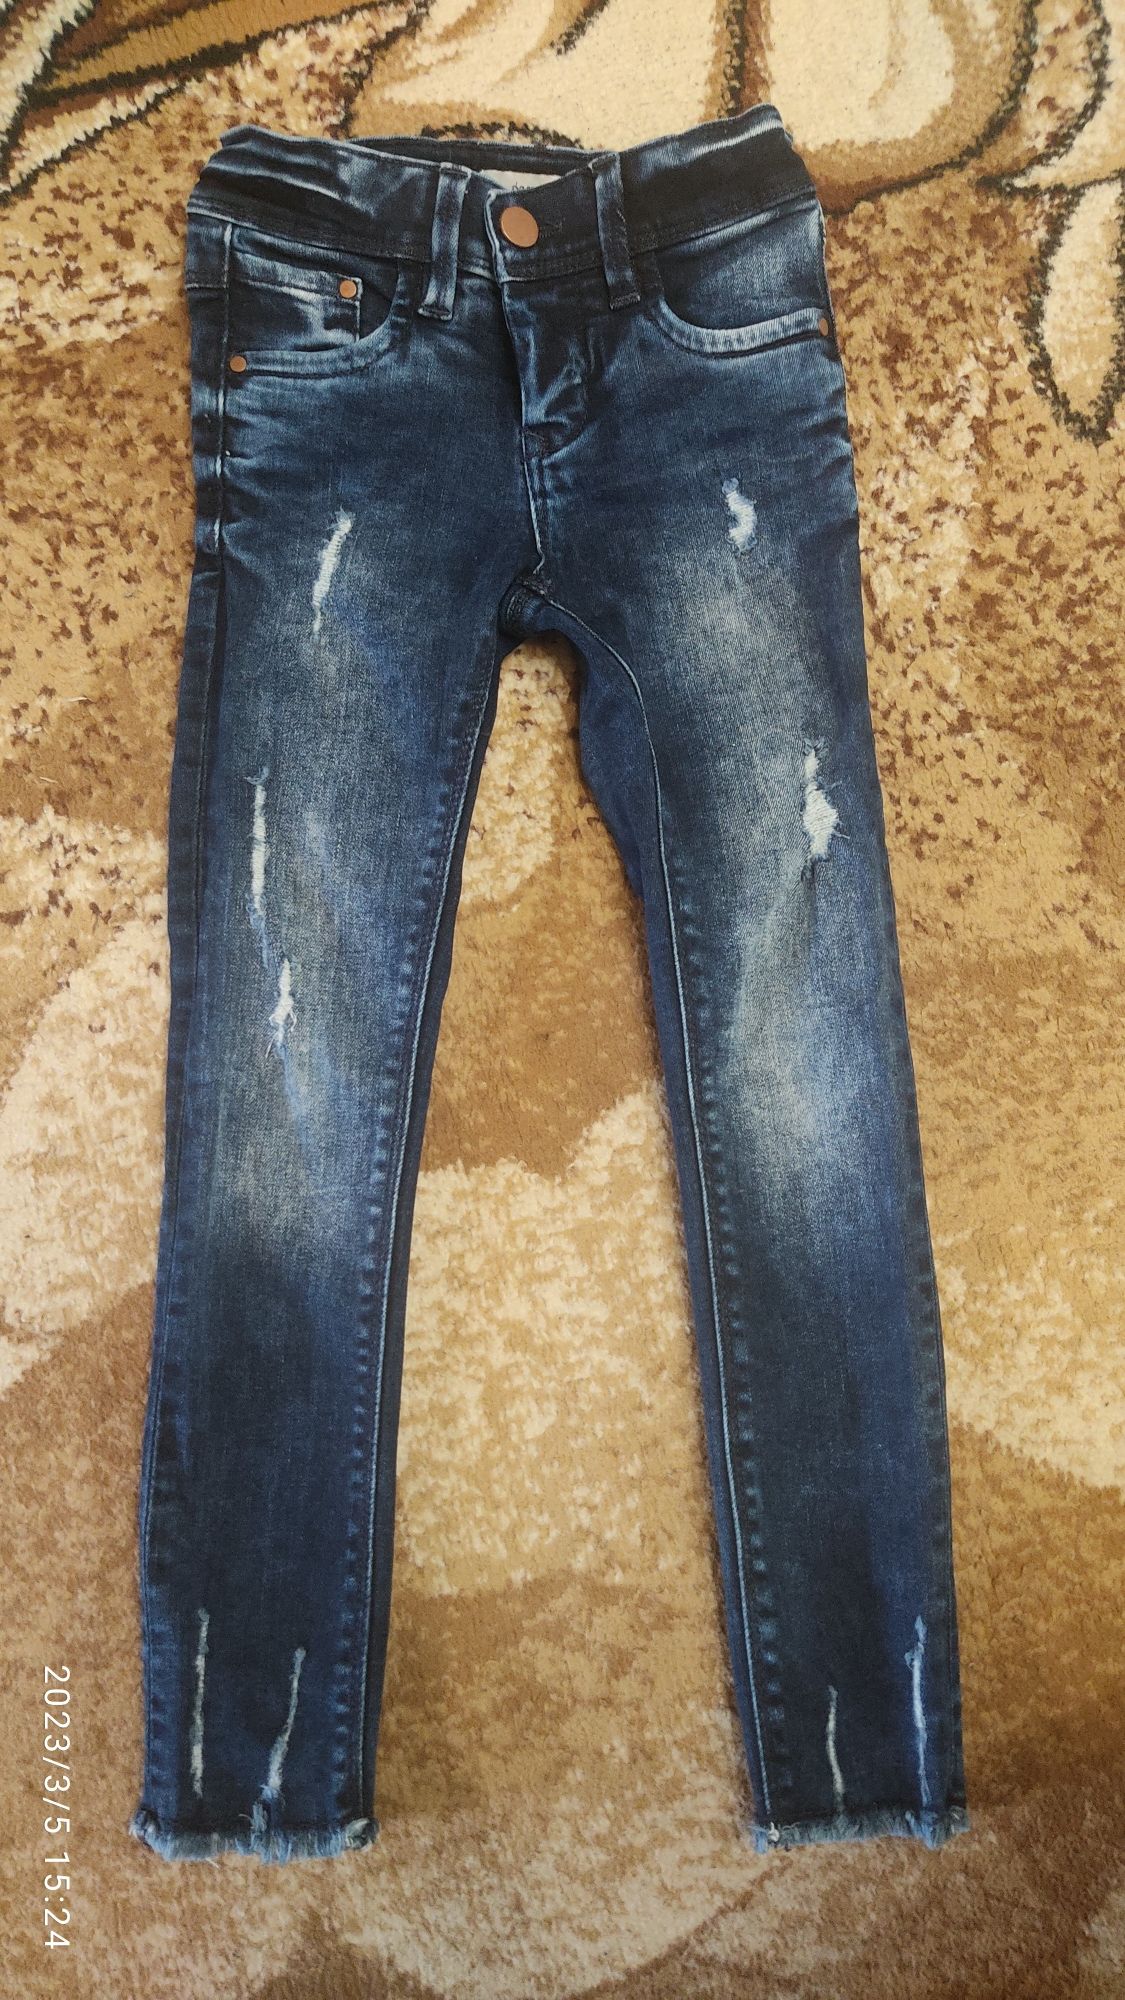 Модні джинси-узкачі,на ріст 116 см